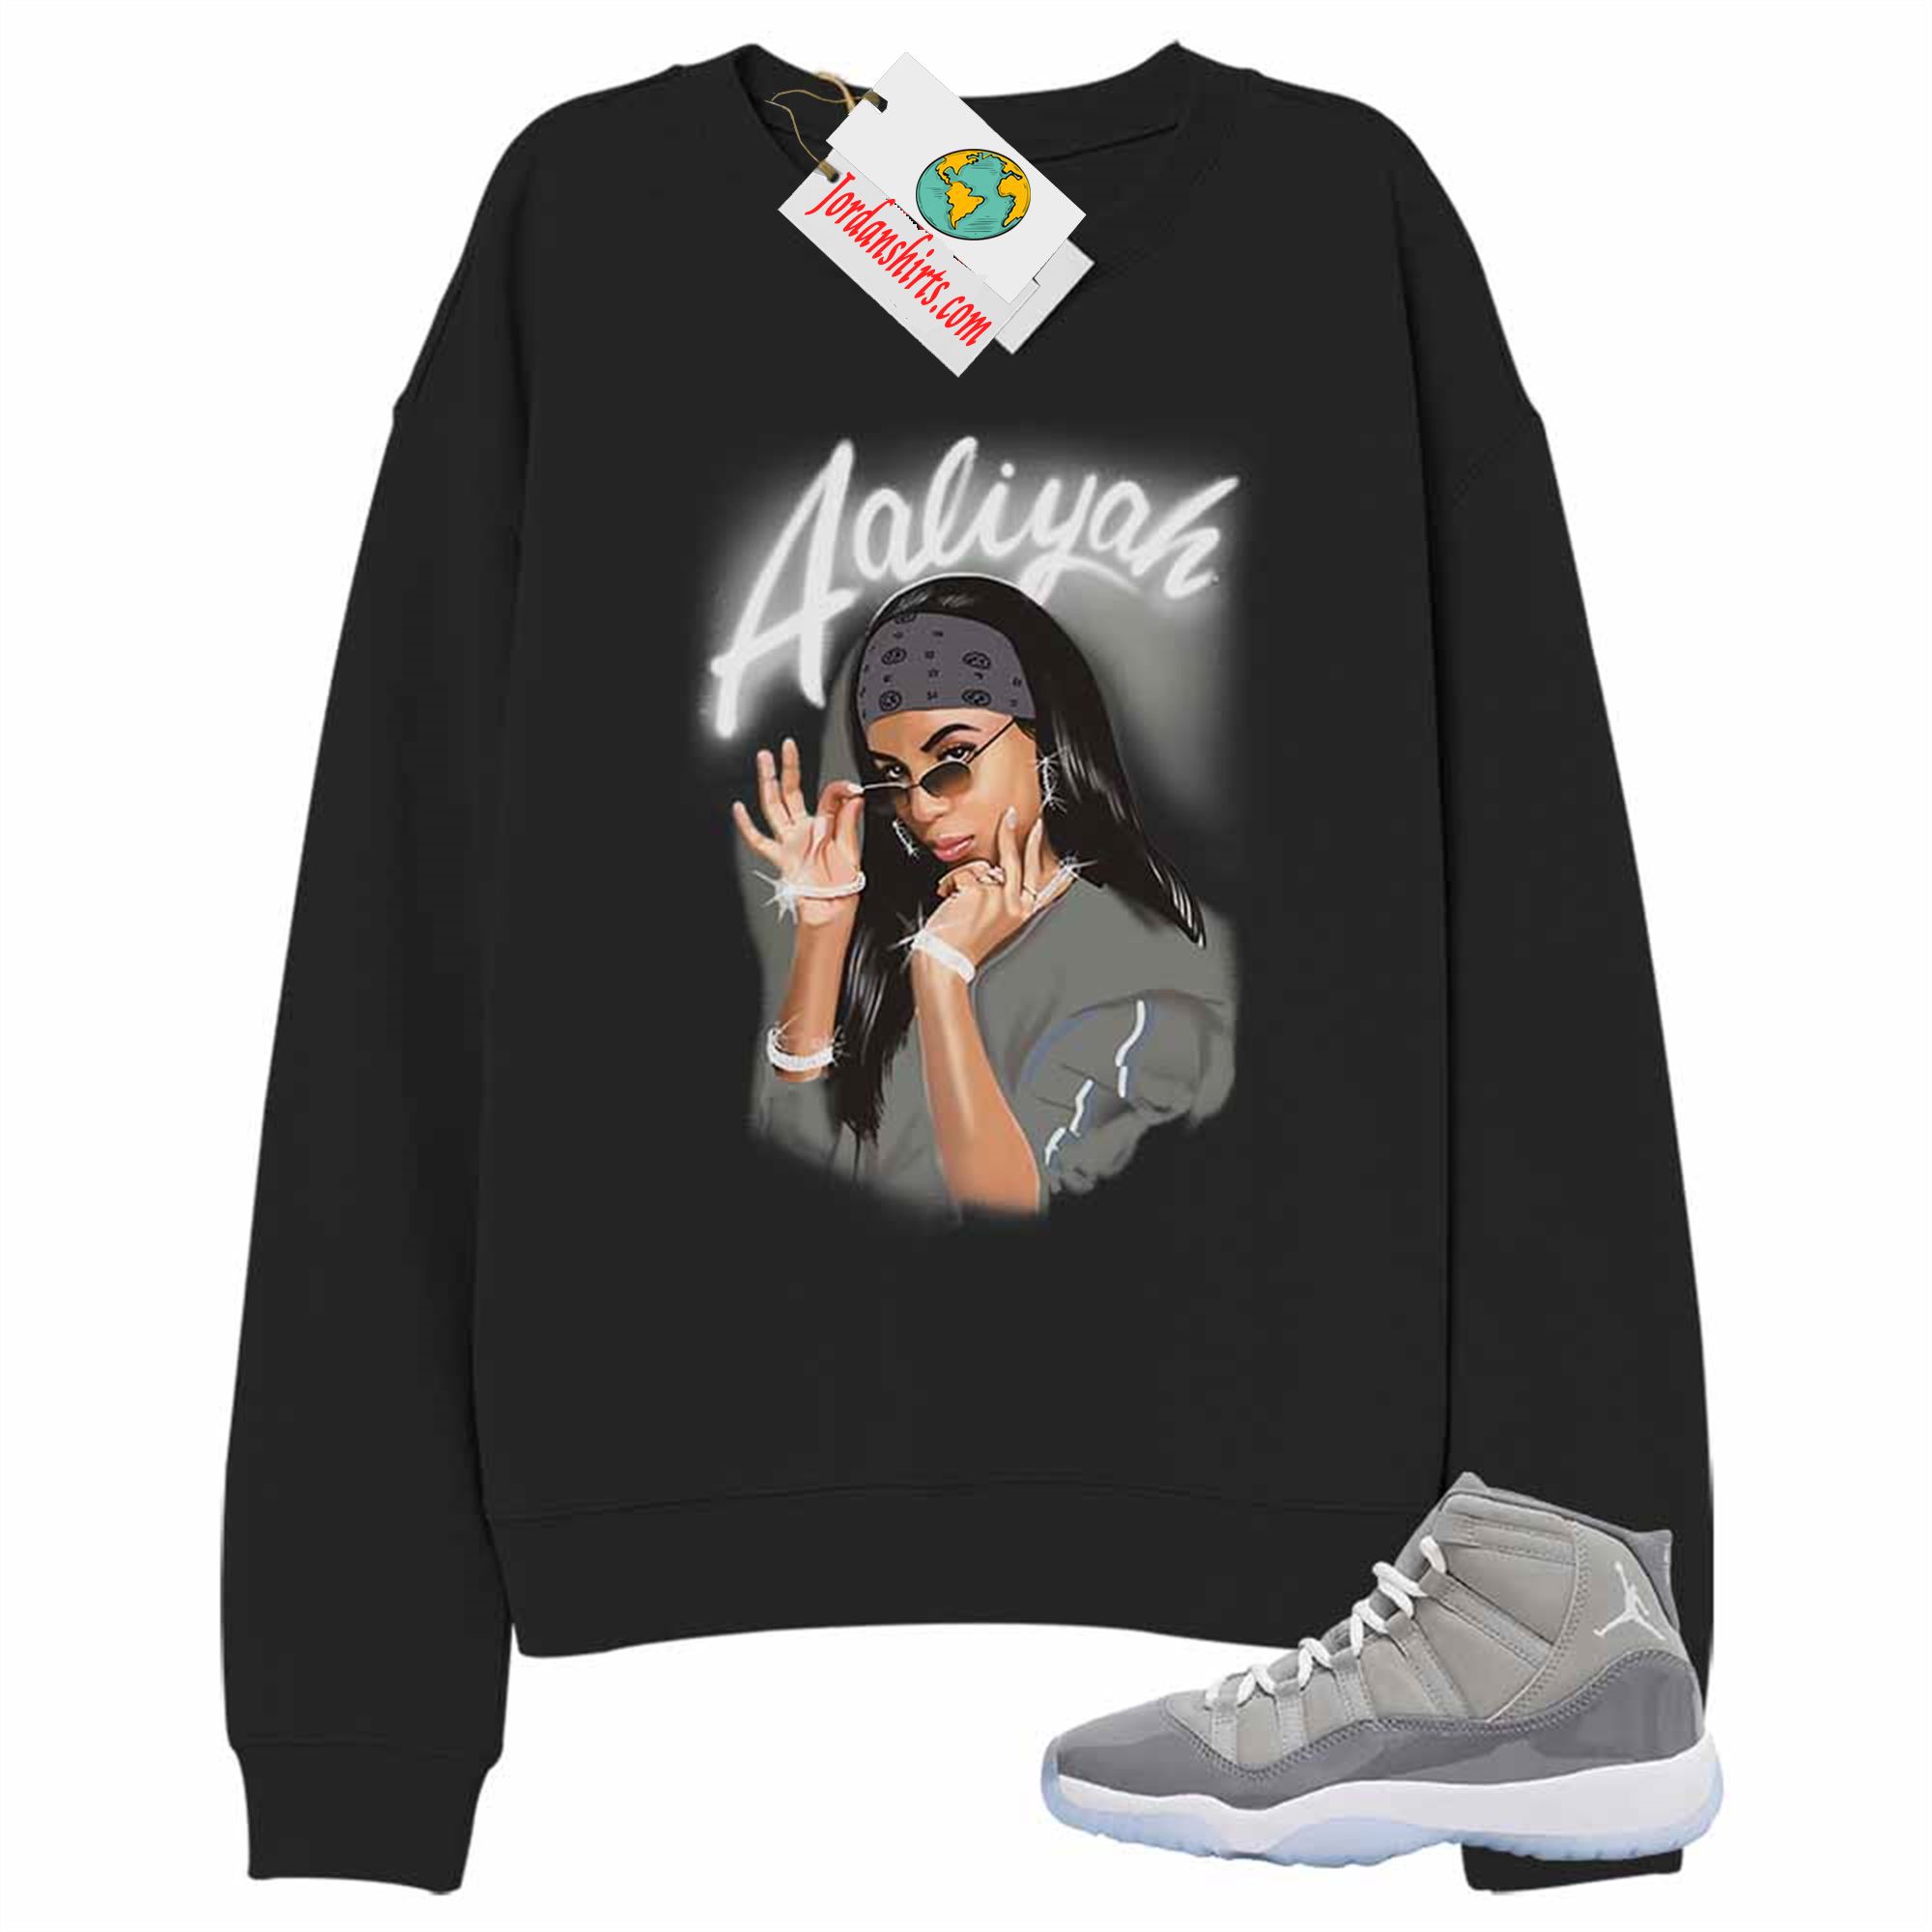 Jordan 11 Sweatshirt, Aaliyah Airbrush Black Sweatshirt Air Jordan 11 Cool Grey 11s Plus Size Up To 5xl